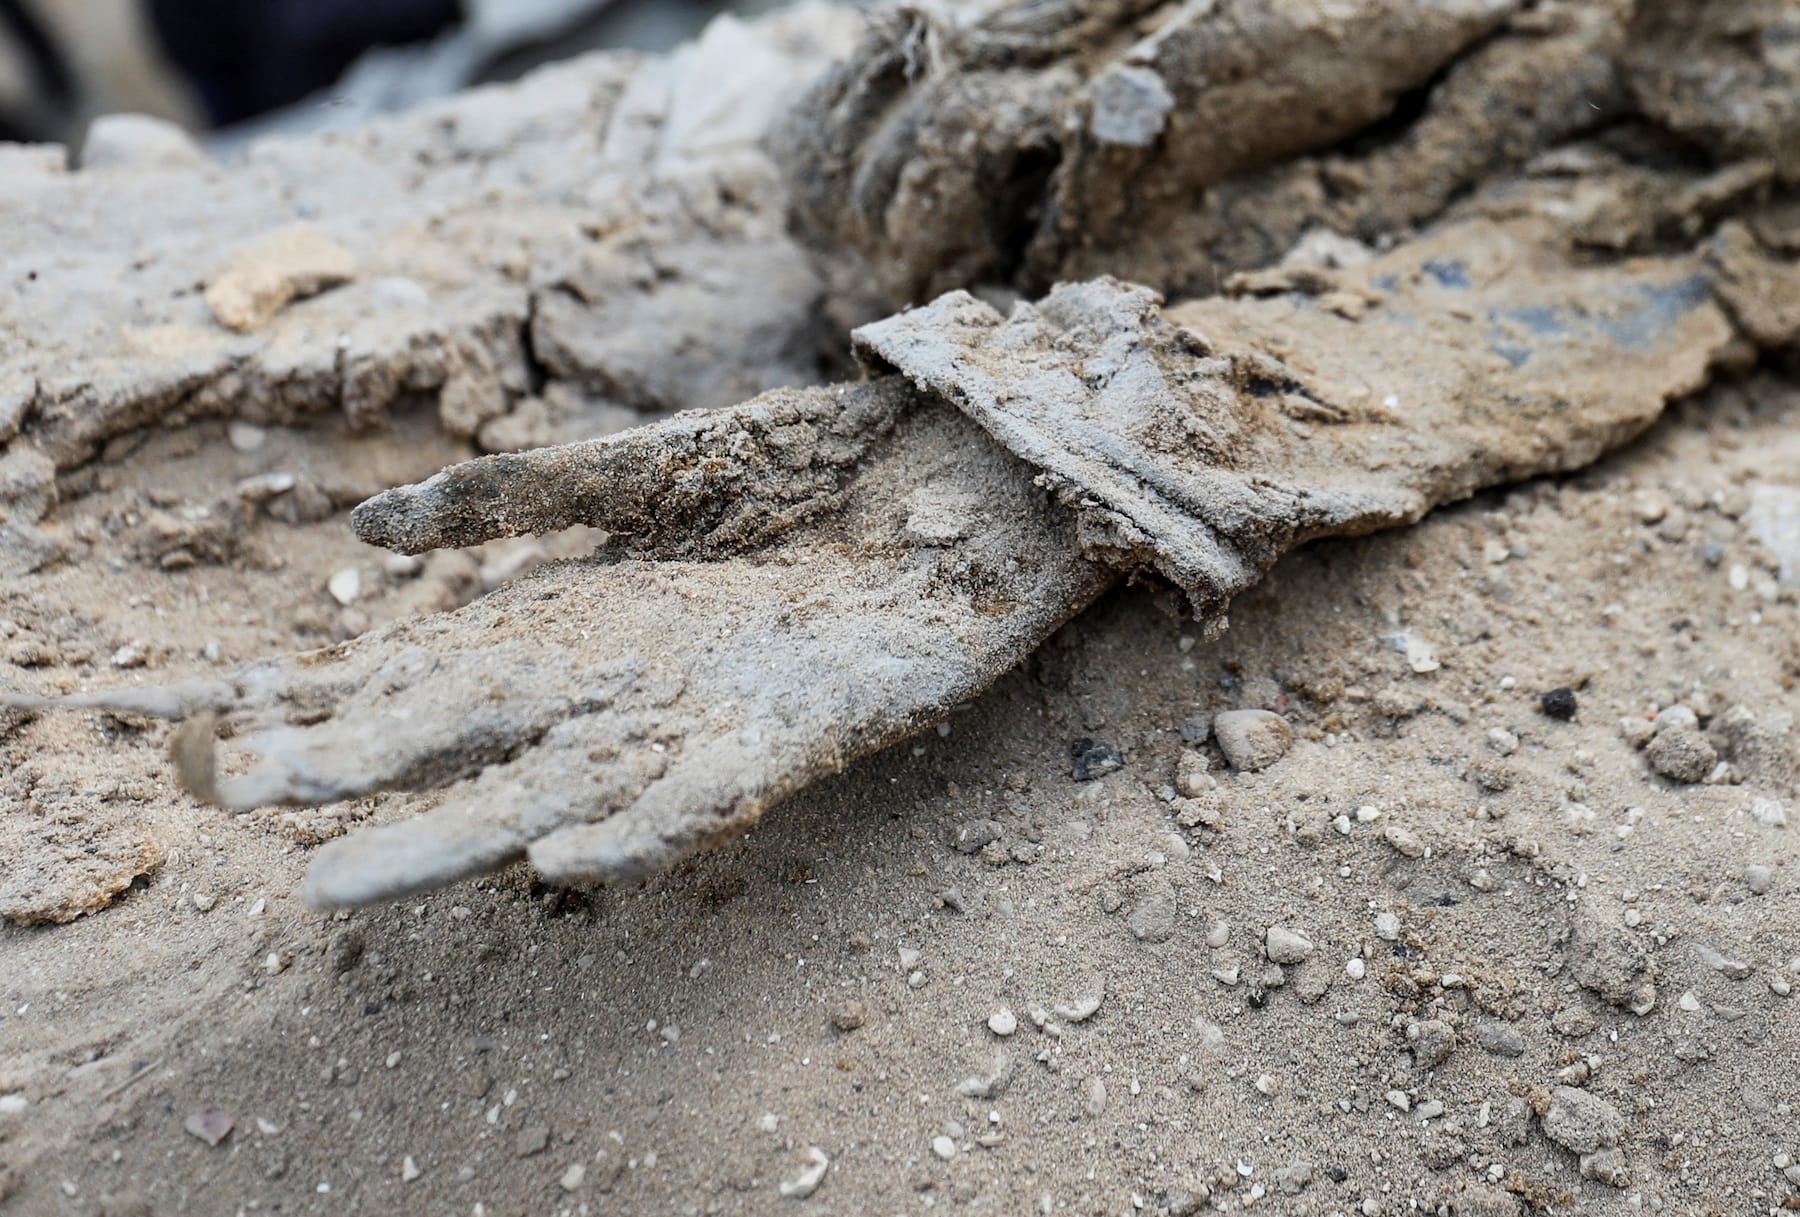 decomposed body hand found around Al-shifa complex